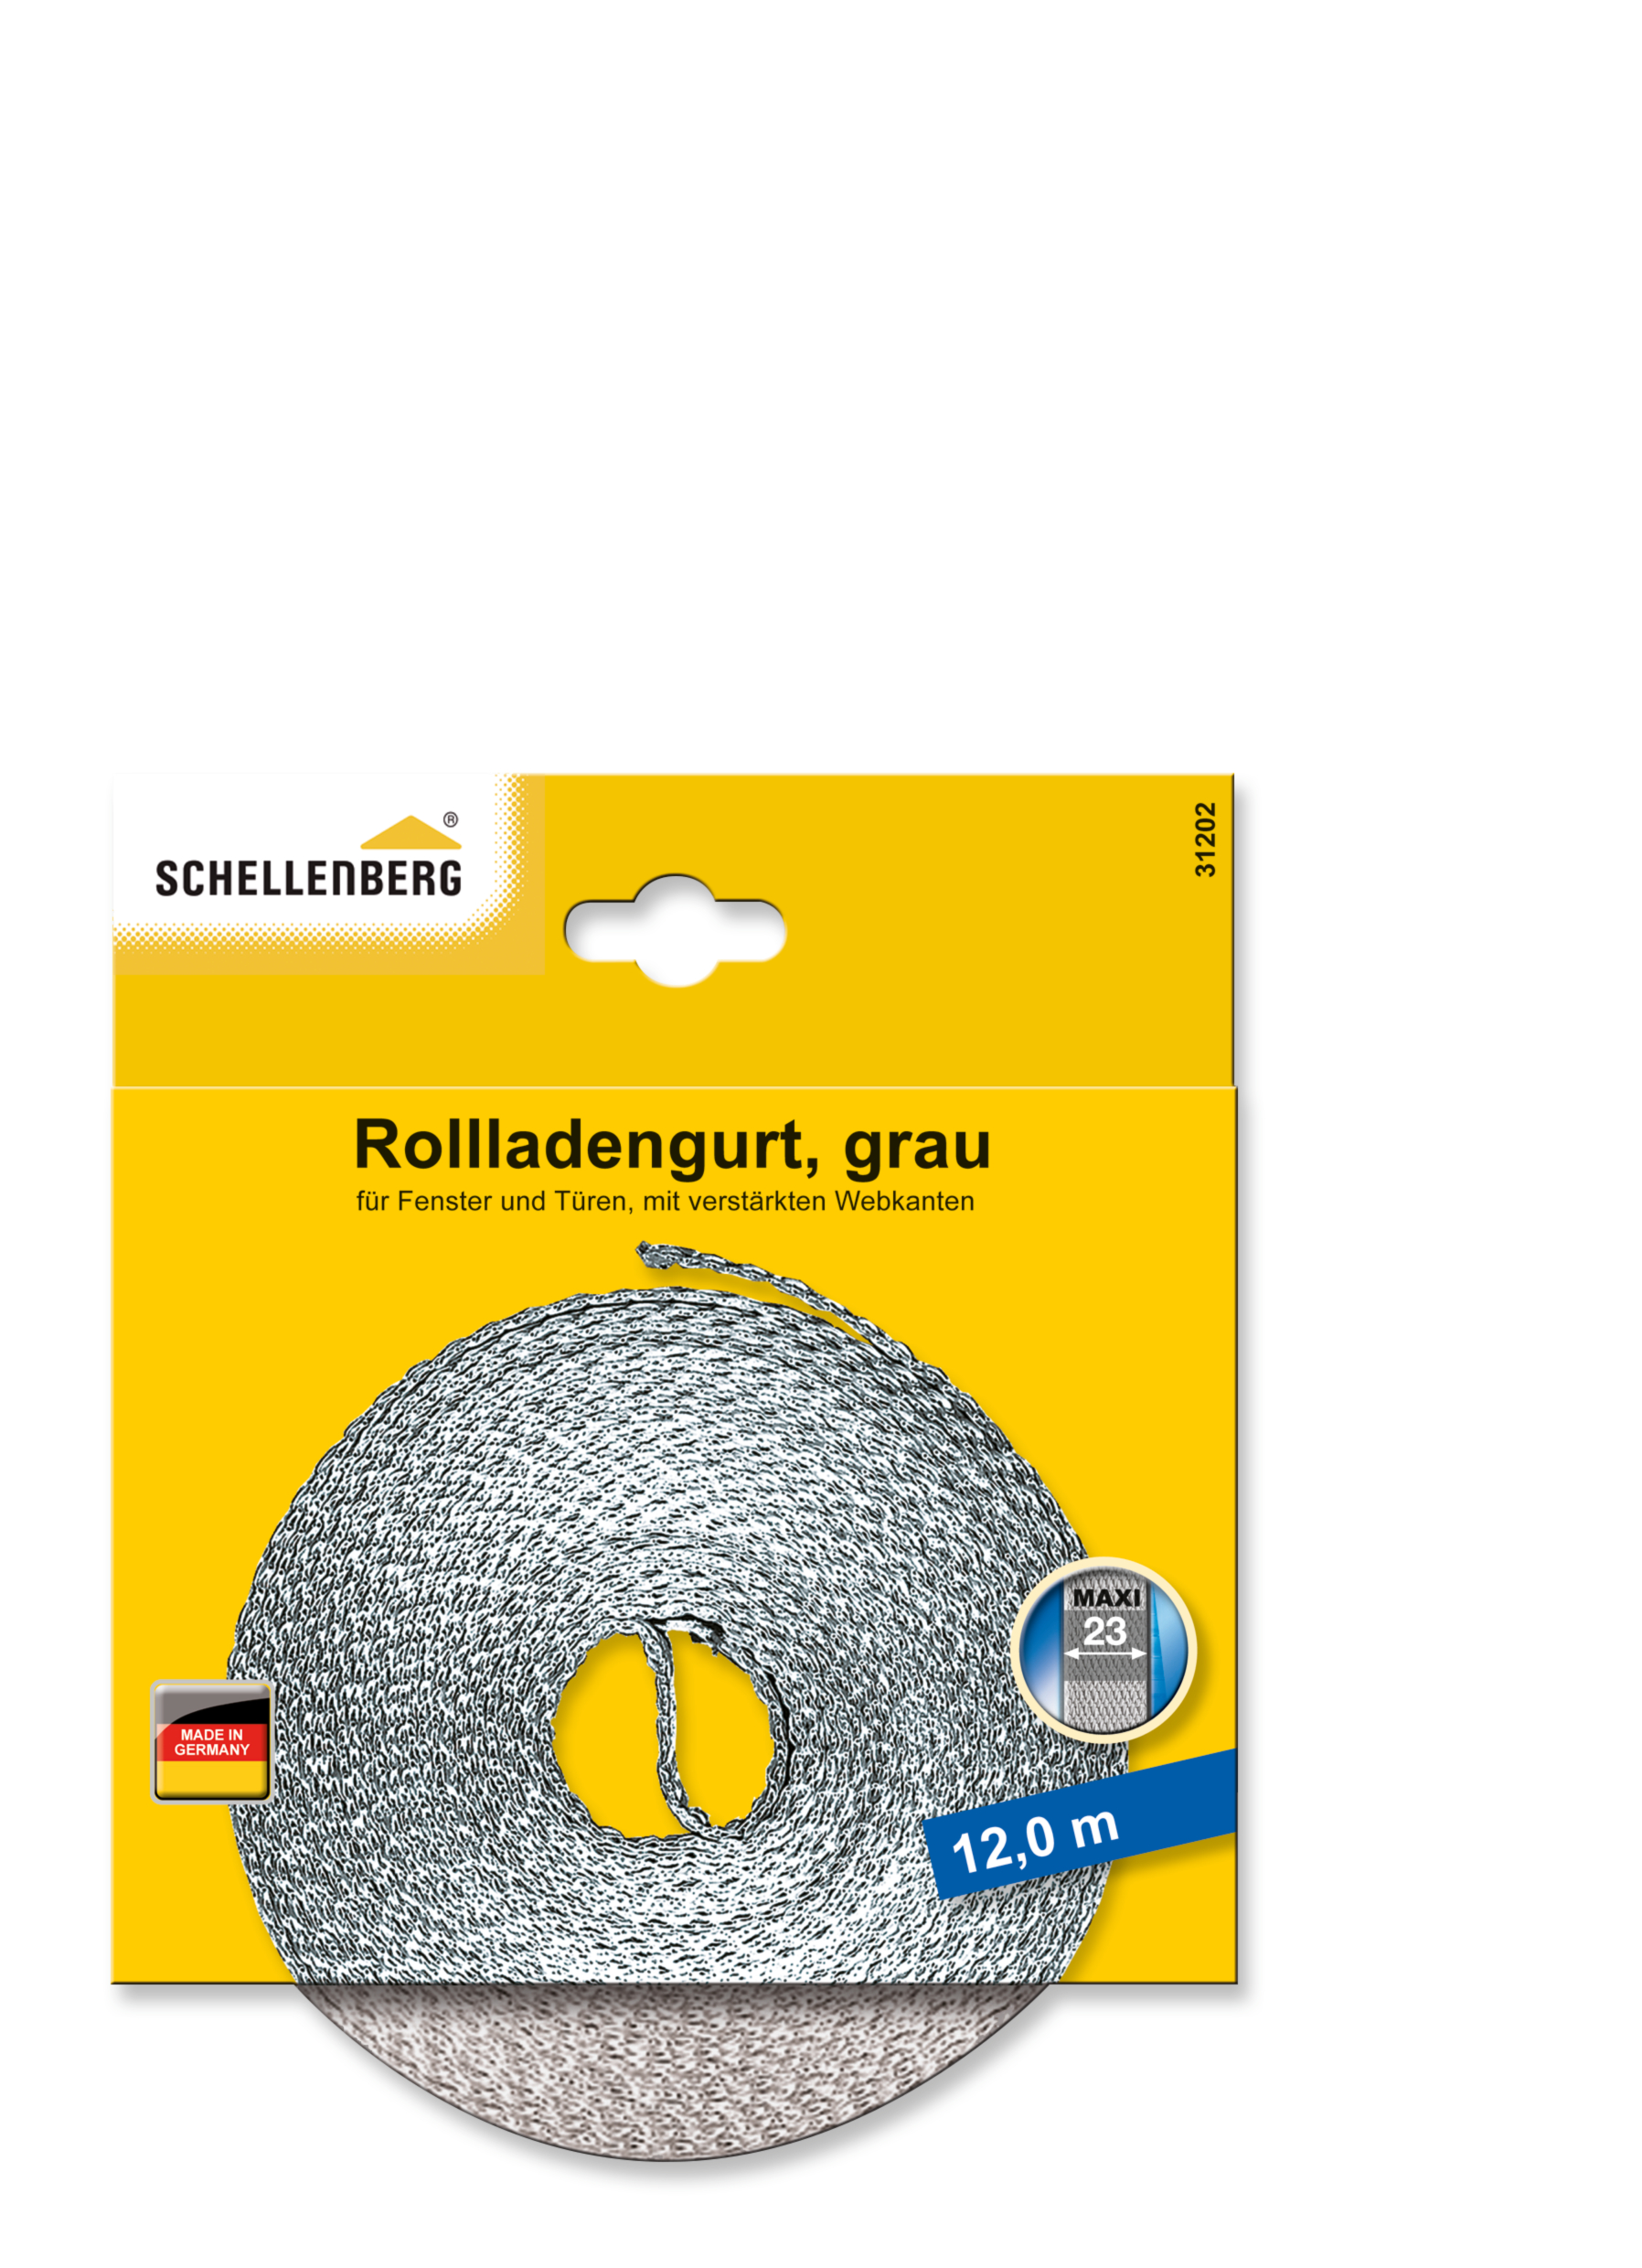 SCHELLENBERG Rollladengurt 23 mm/12,0 m grau 